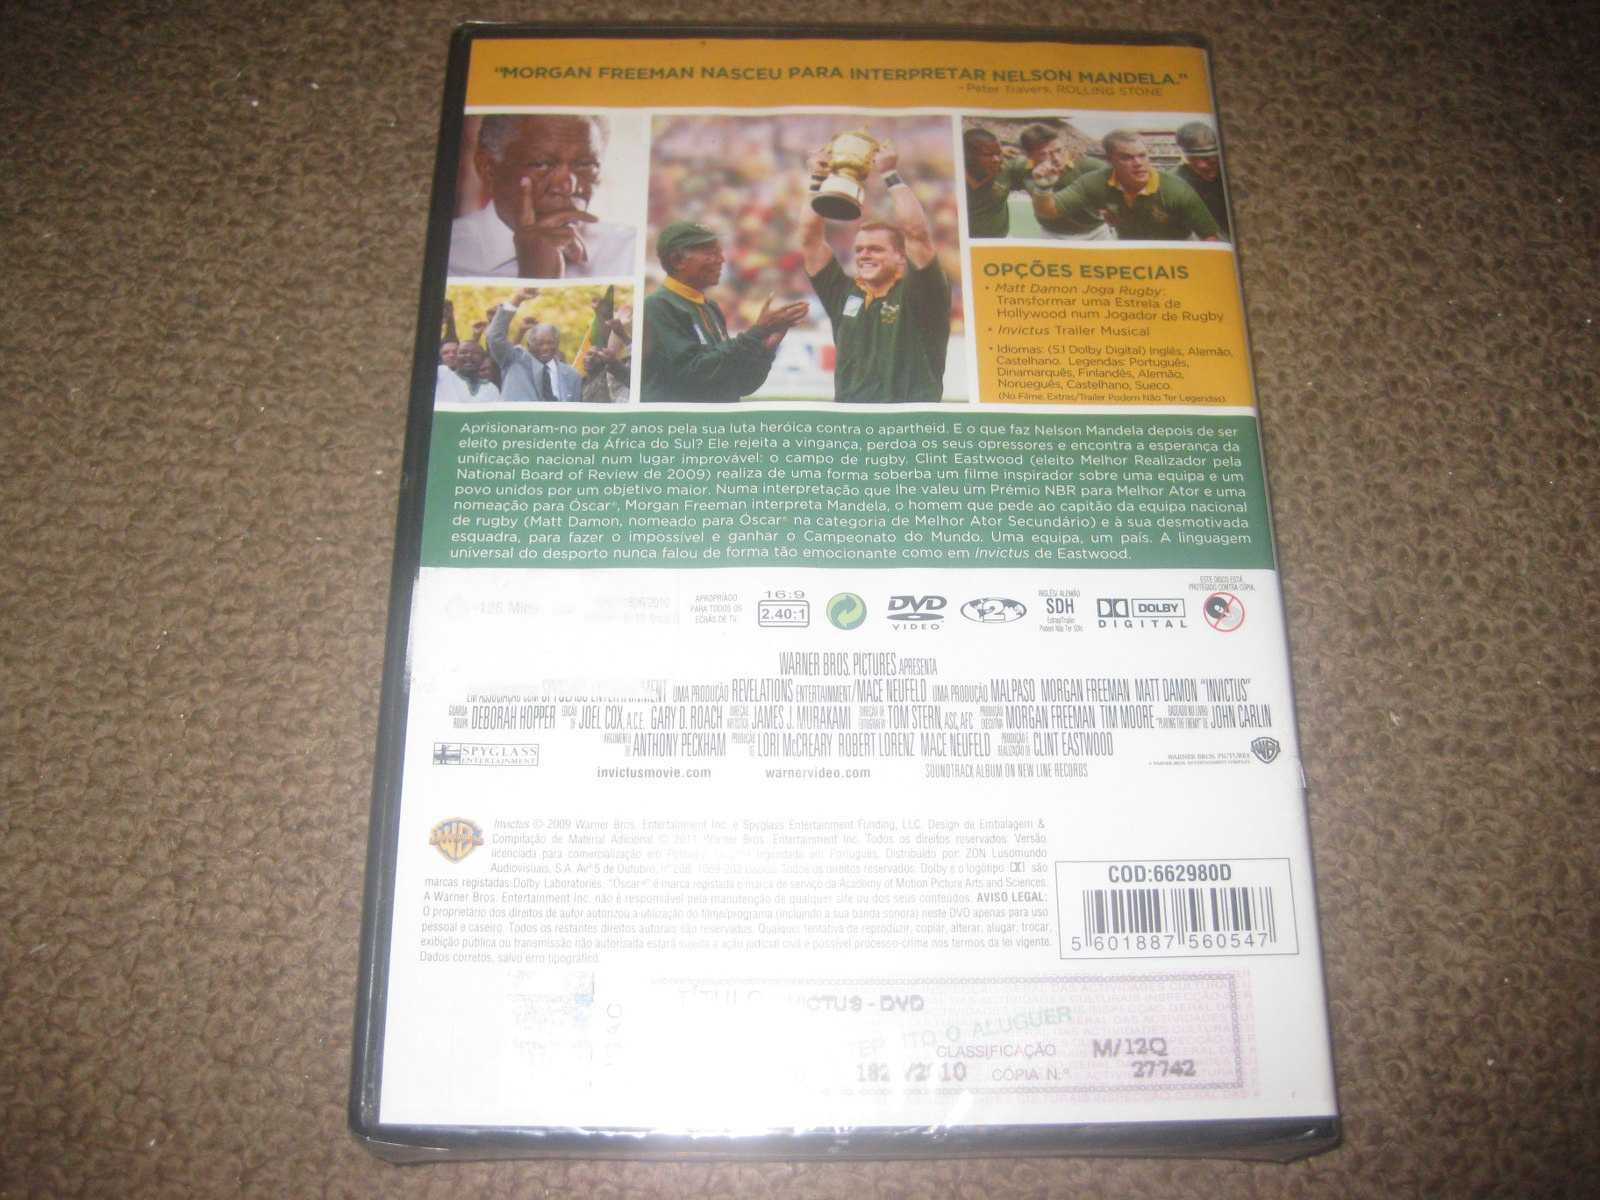 DVD "Invictus" com Matt Damon/Selado!